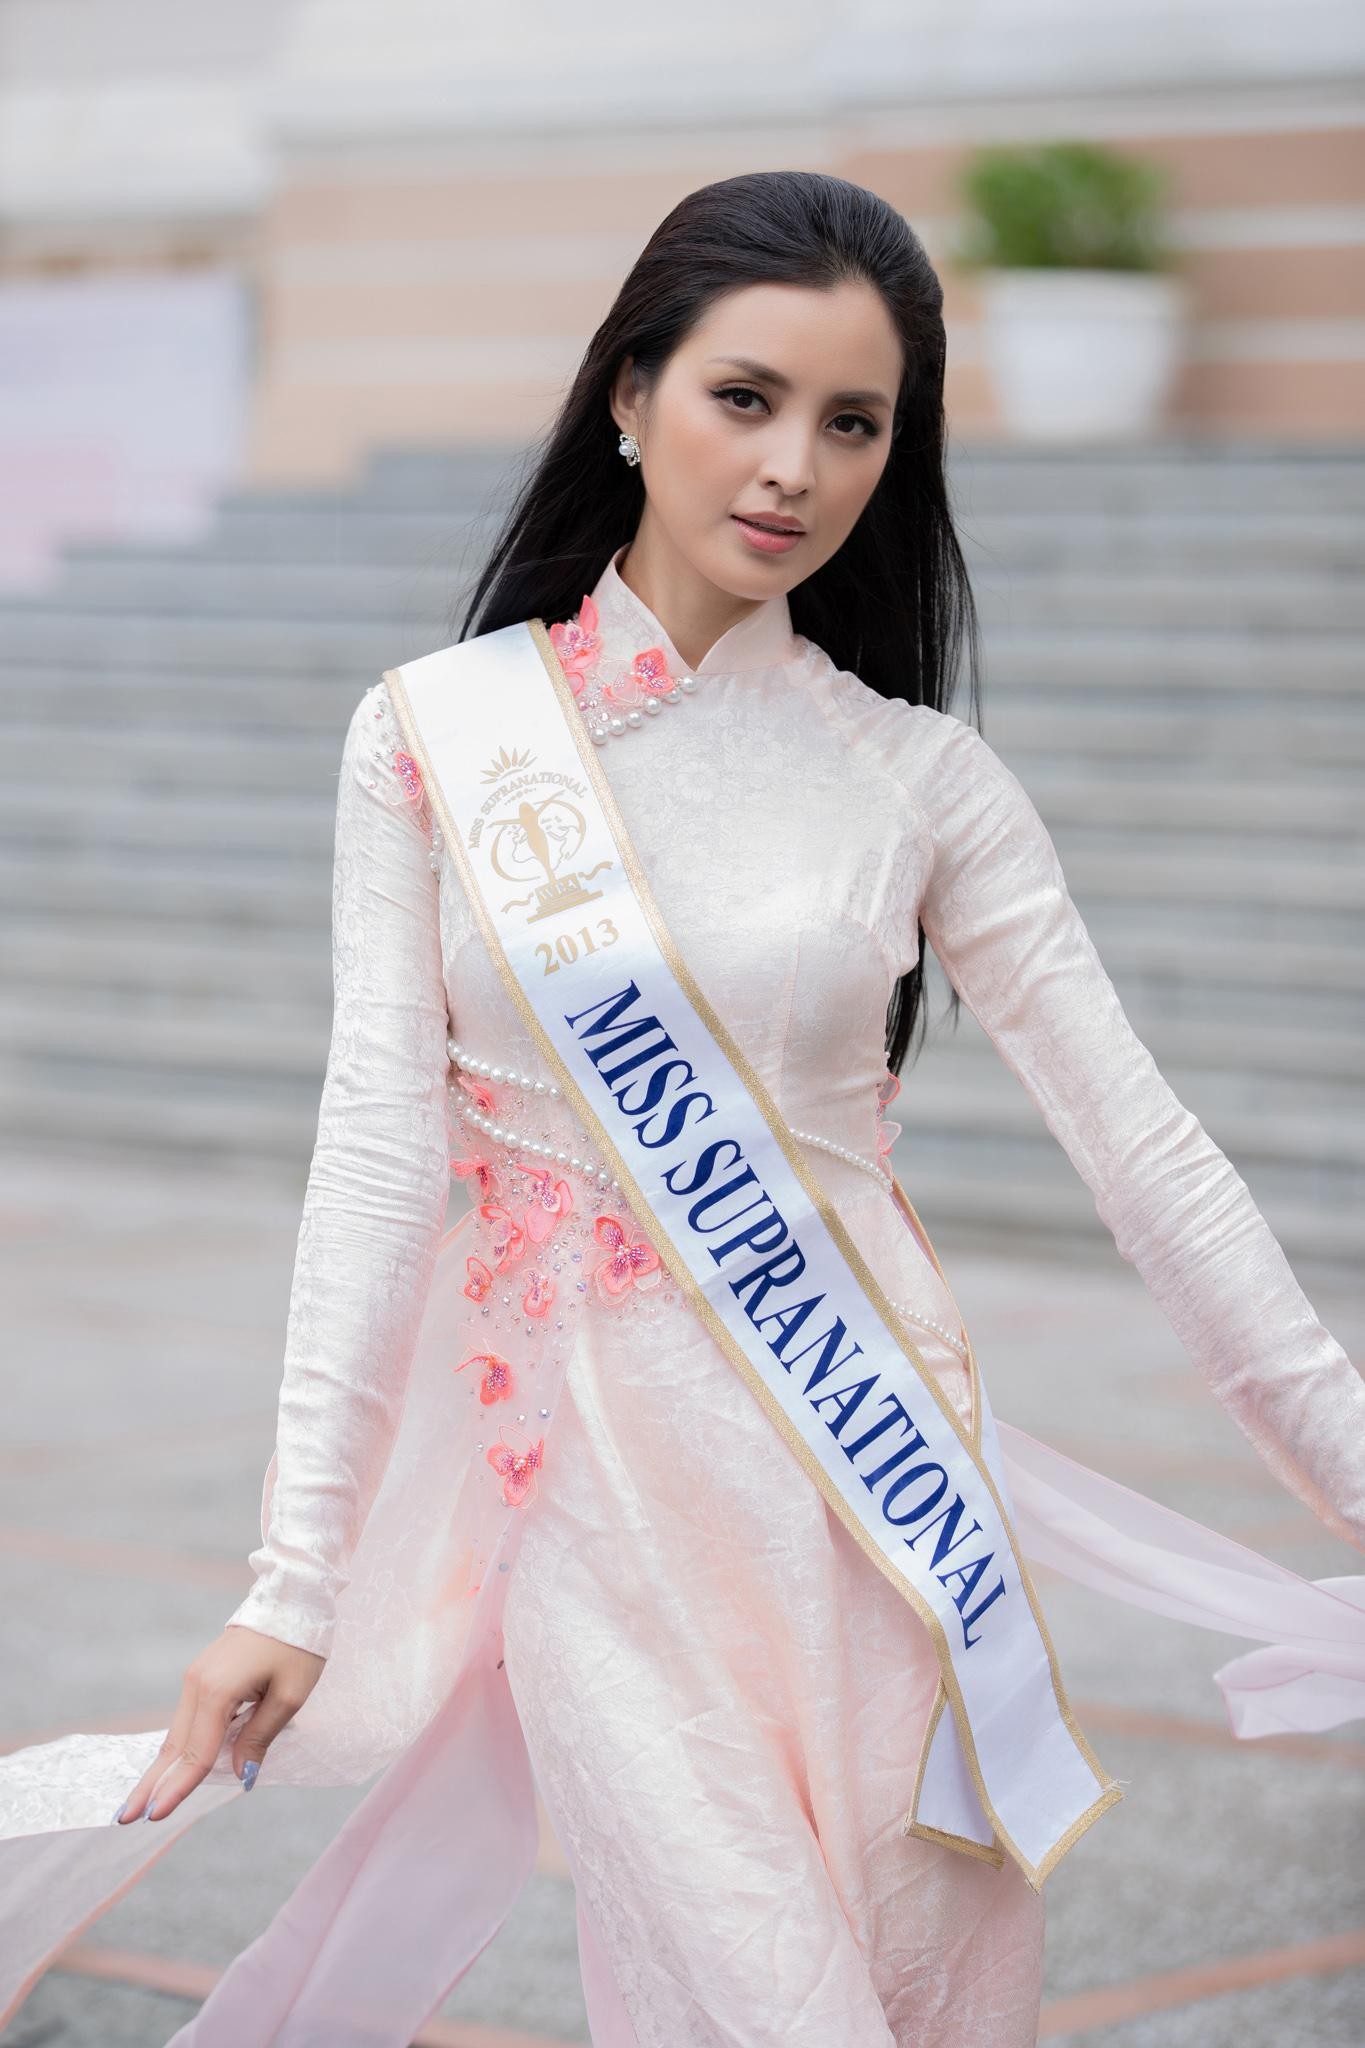 Dàn Hoa hậu đình đám thế giới khoe nhan sắc xinh đẹp với áo dài khi đến Việt Nam - Ảnh 13.